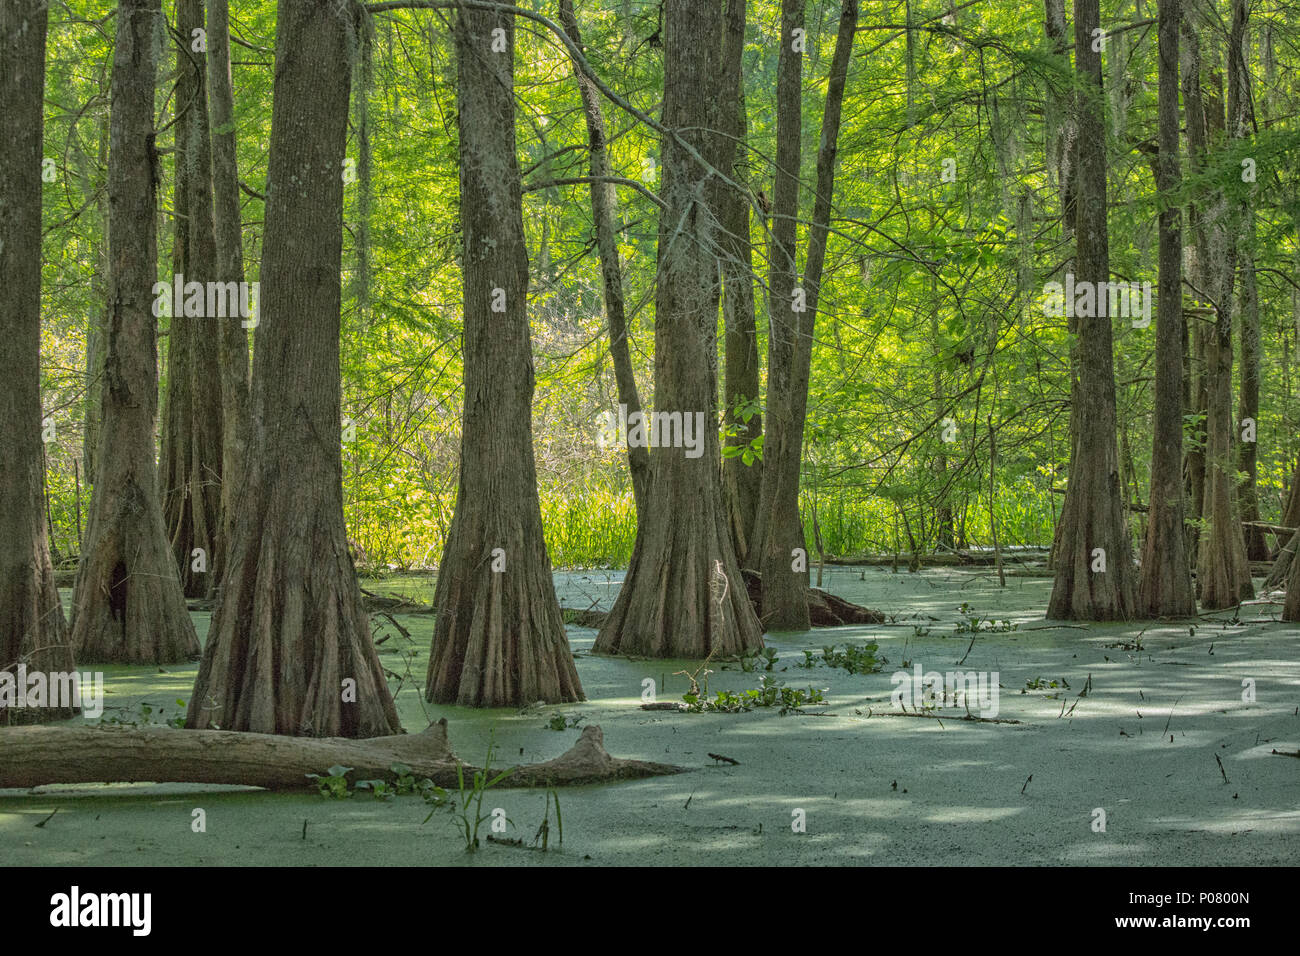 Cyprès chauve (Taxodium distichum) ; Lac Martin, Breaux Bridge, bassin Atchafalaya, Sud des États-Unis, États-Unis d'Amérique du Nord ; Banque D'Images